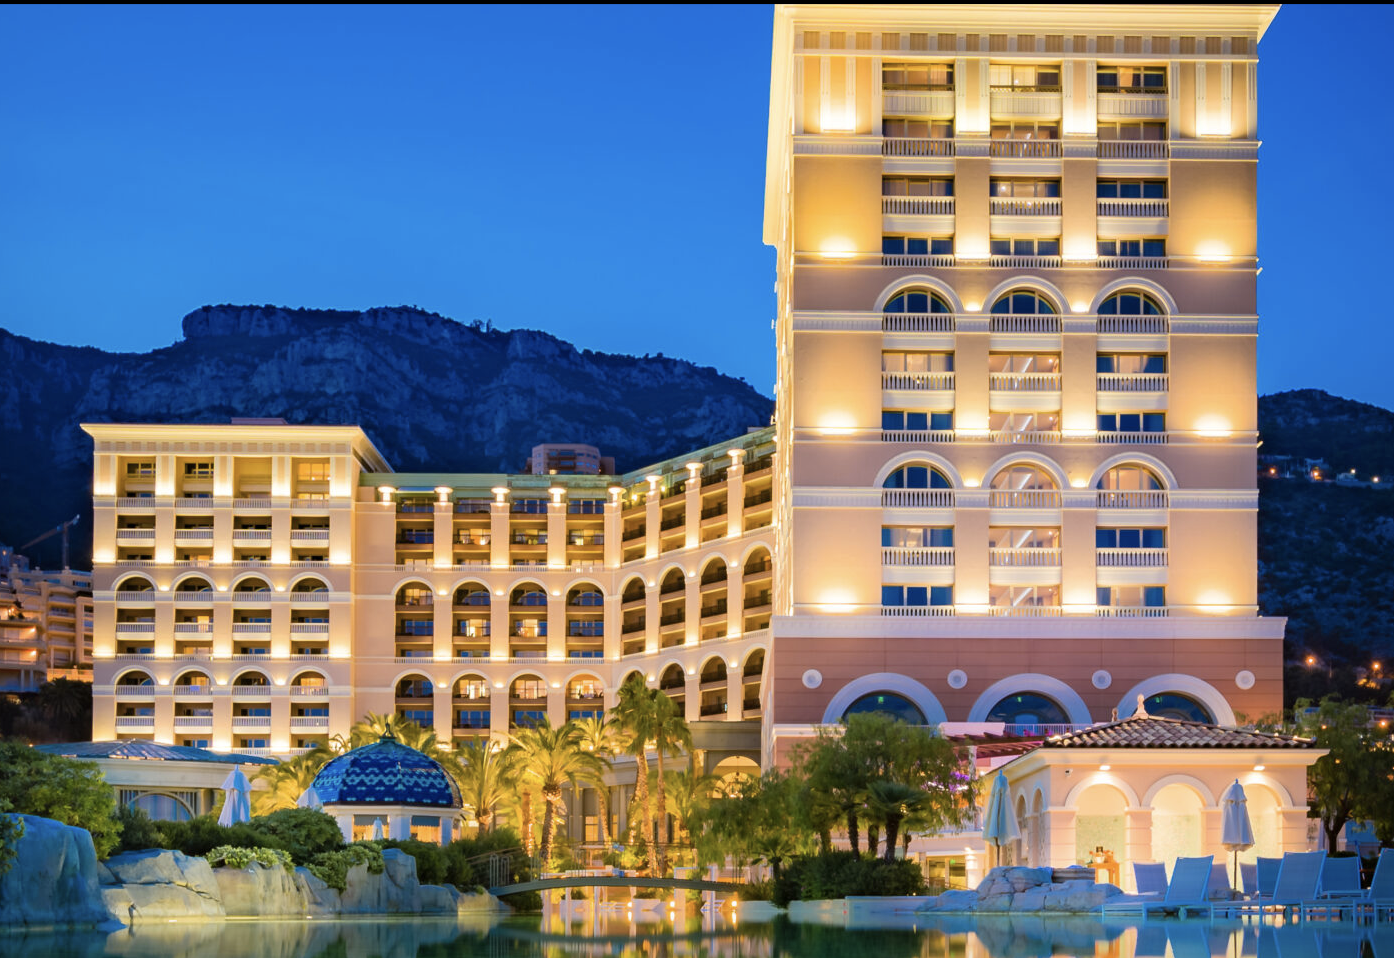 Le luxueux hôtel Monte-Carlo Bay Resort & Spa (5 étoiles) accueillera les invités, les candidat.e.s et partenaires de l’évènement